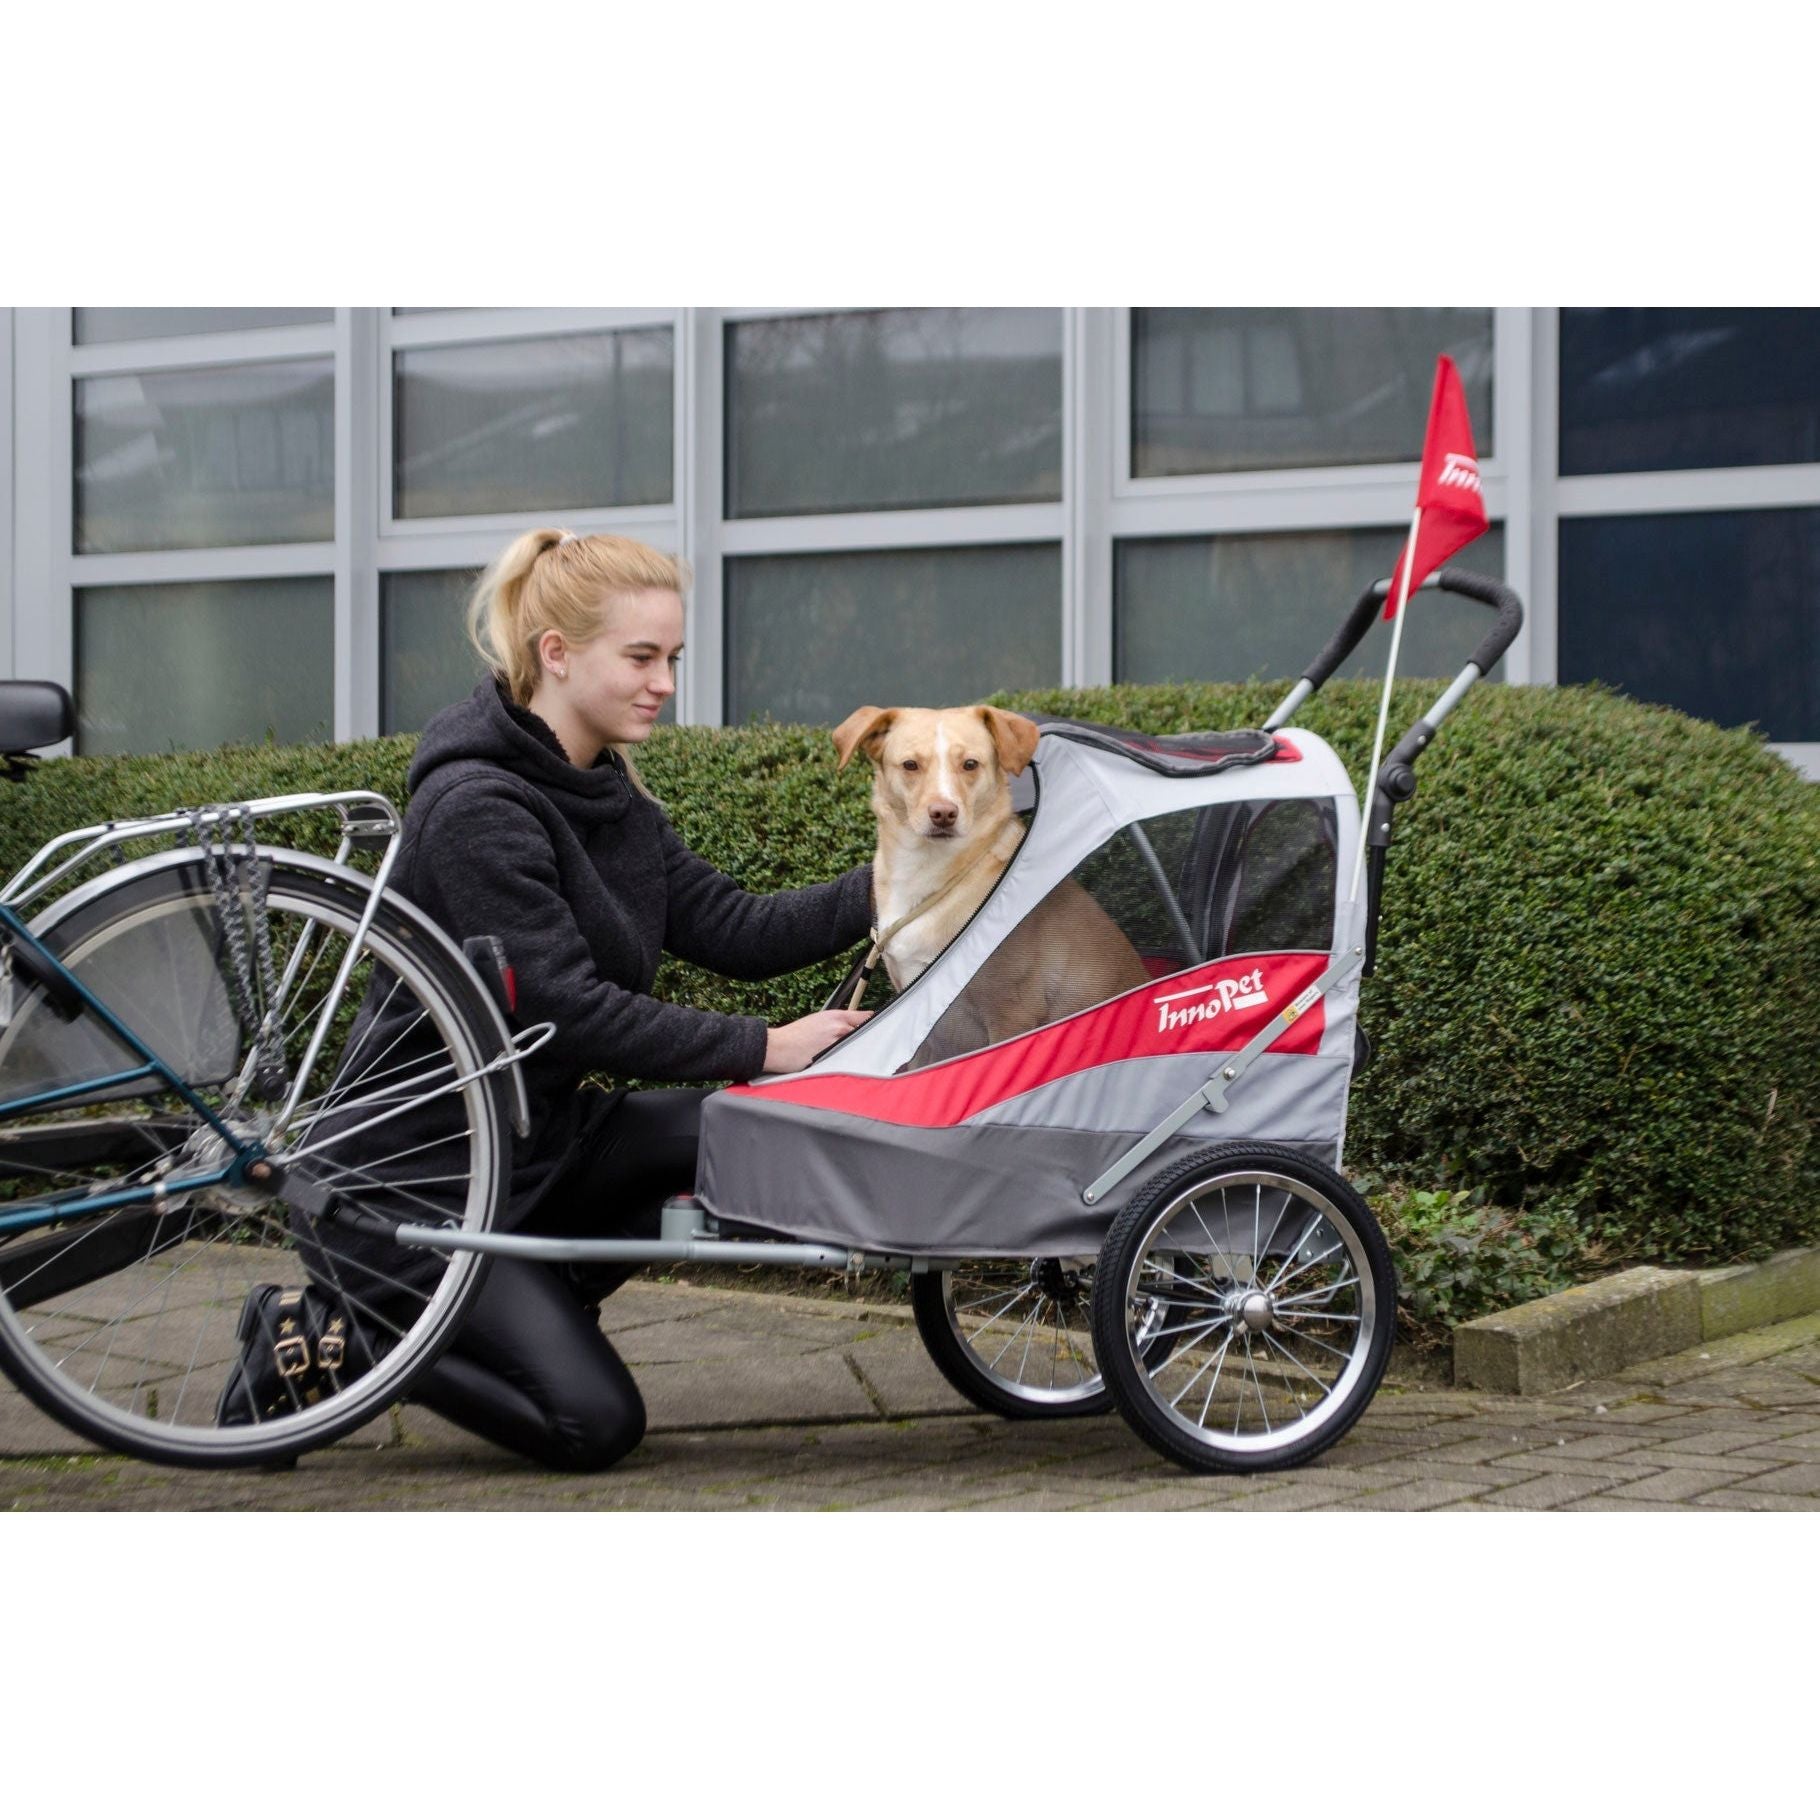 InnoPet® Hundebuggy/Fahrradanhänger "Sporty Trailer" inkl. Regenhaube - Askmy4Cats